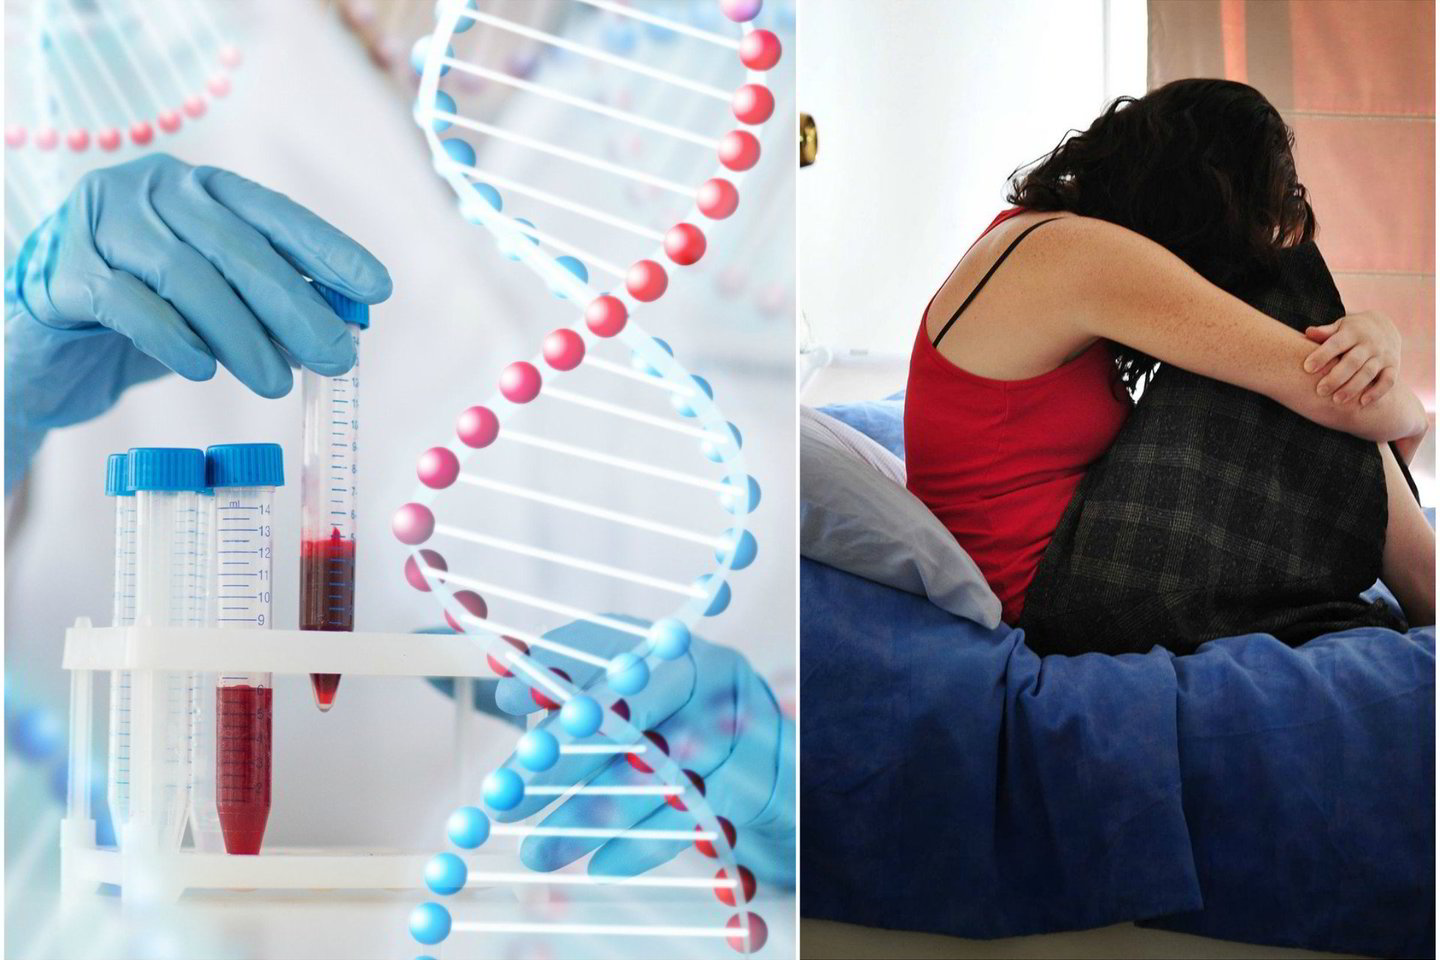  DNR testas atskleidė paslaptį, kas iš tiesų yra moters biologinis tėvas.<br> 123rf.com nuotr.